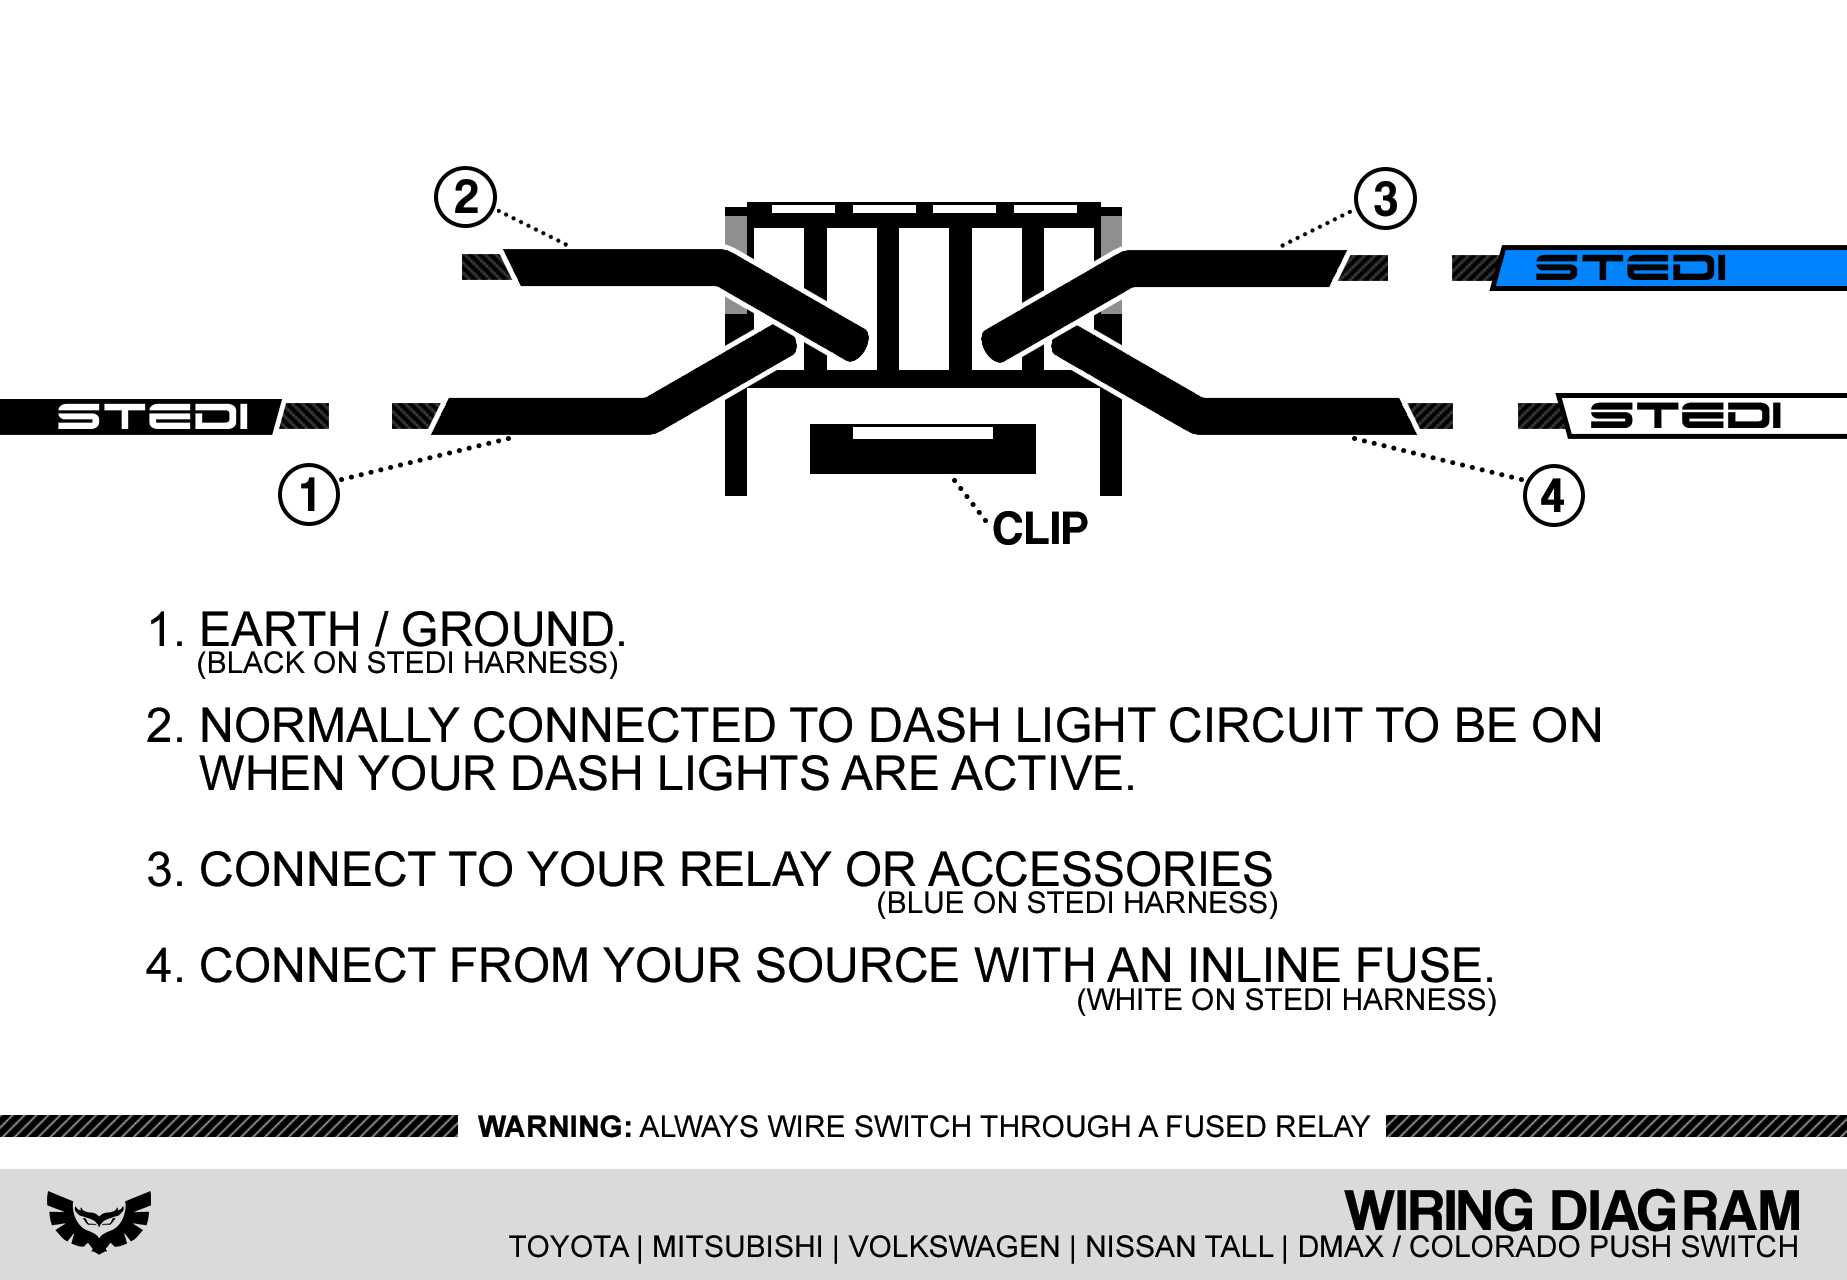 Wiring Diagram For Vw Headlight Switch from www.stedi.com.au